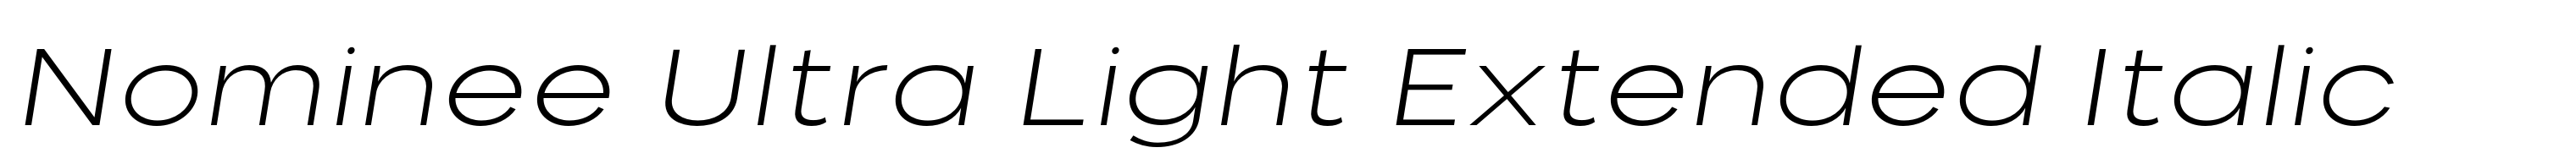 Nominee Ultra Light Extended Italic